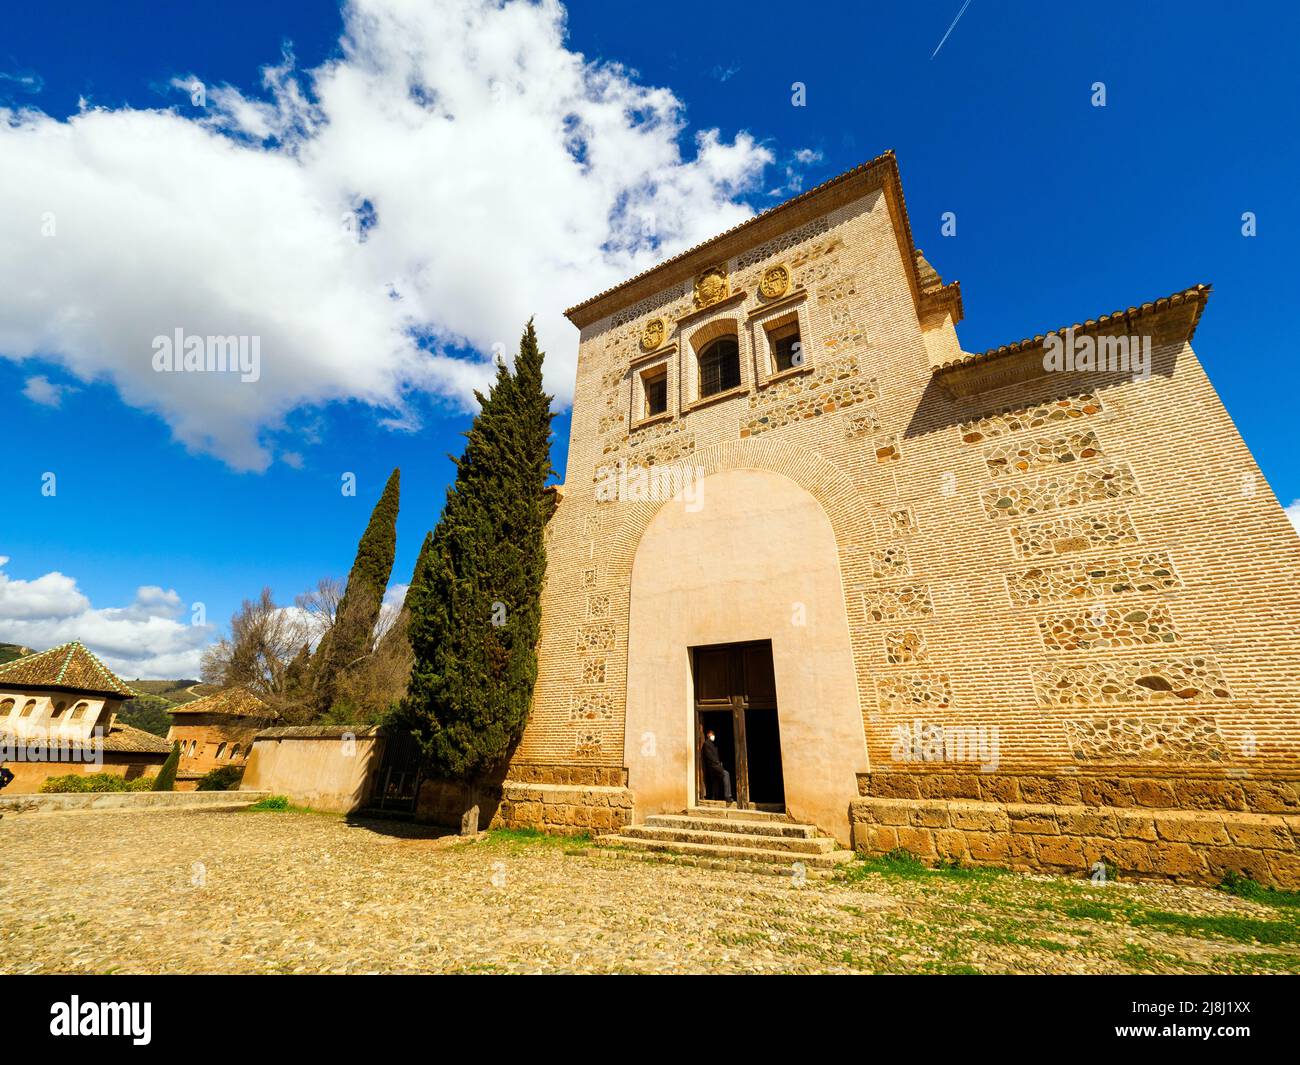 Iglesia de Santa Maria de la Encarnacion (Chiesa di Santa Maria dell'Incarnazione) nel complesso dell'Alhambra - Granada, Spagna Foto Stock